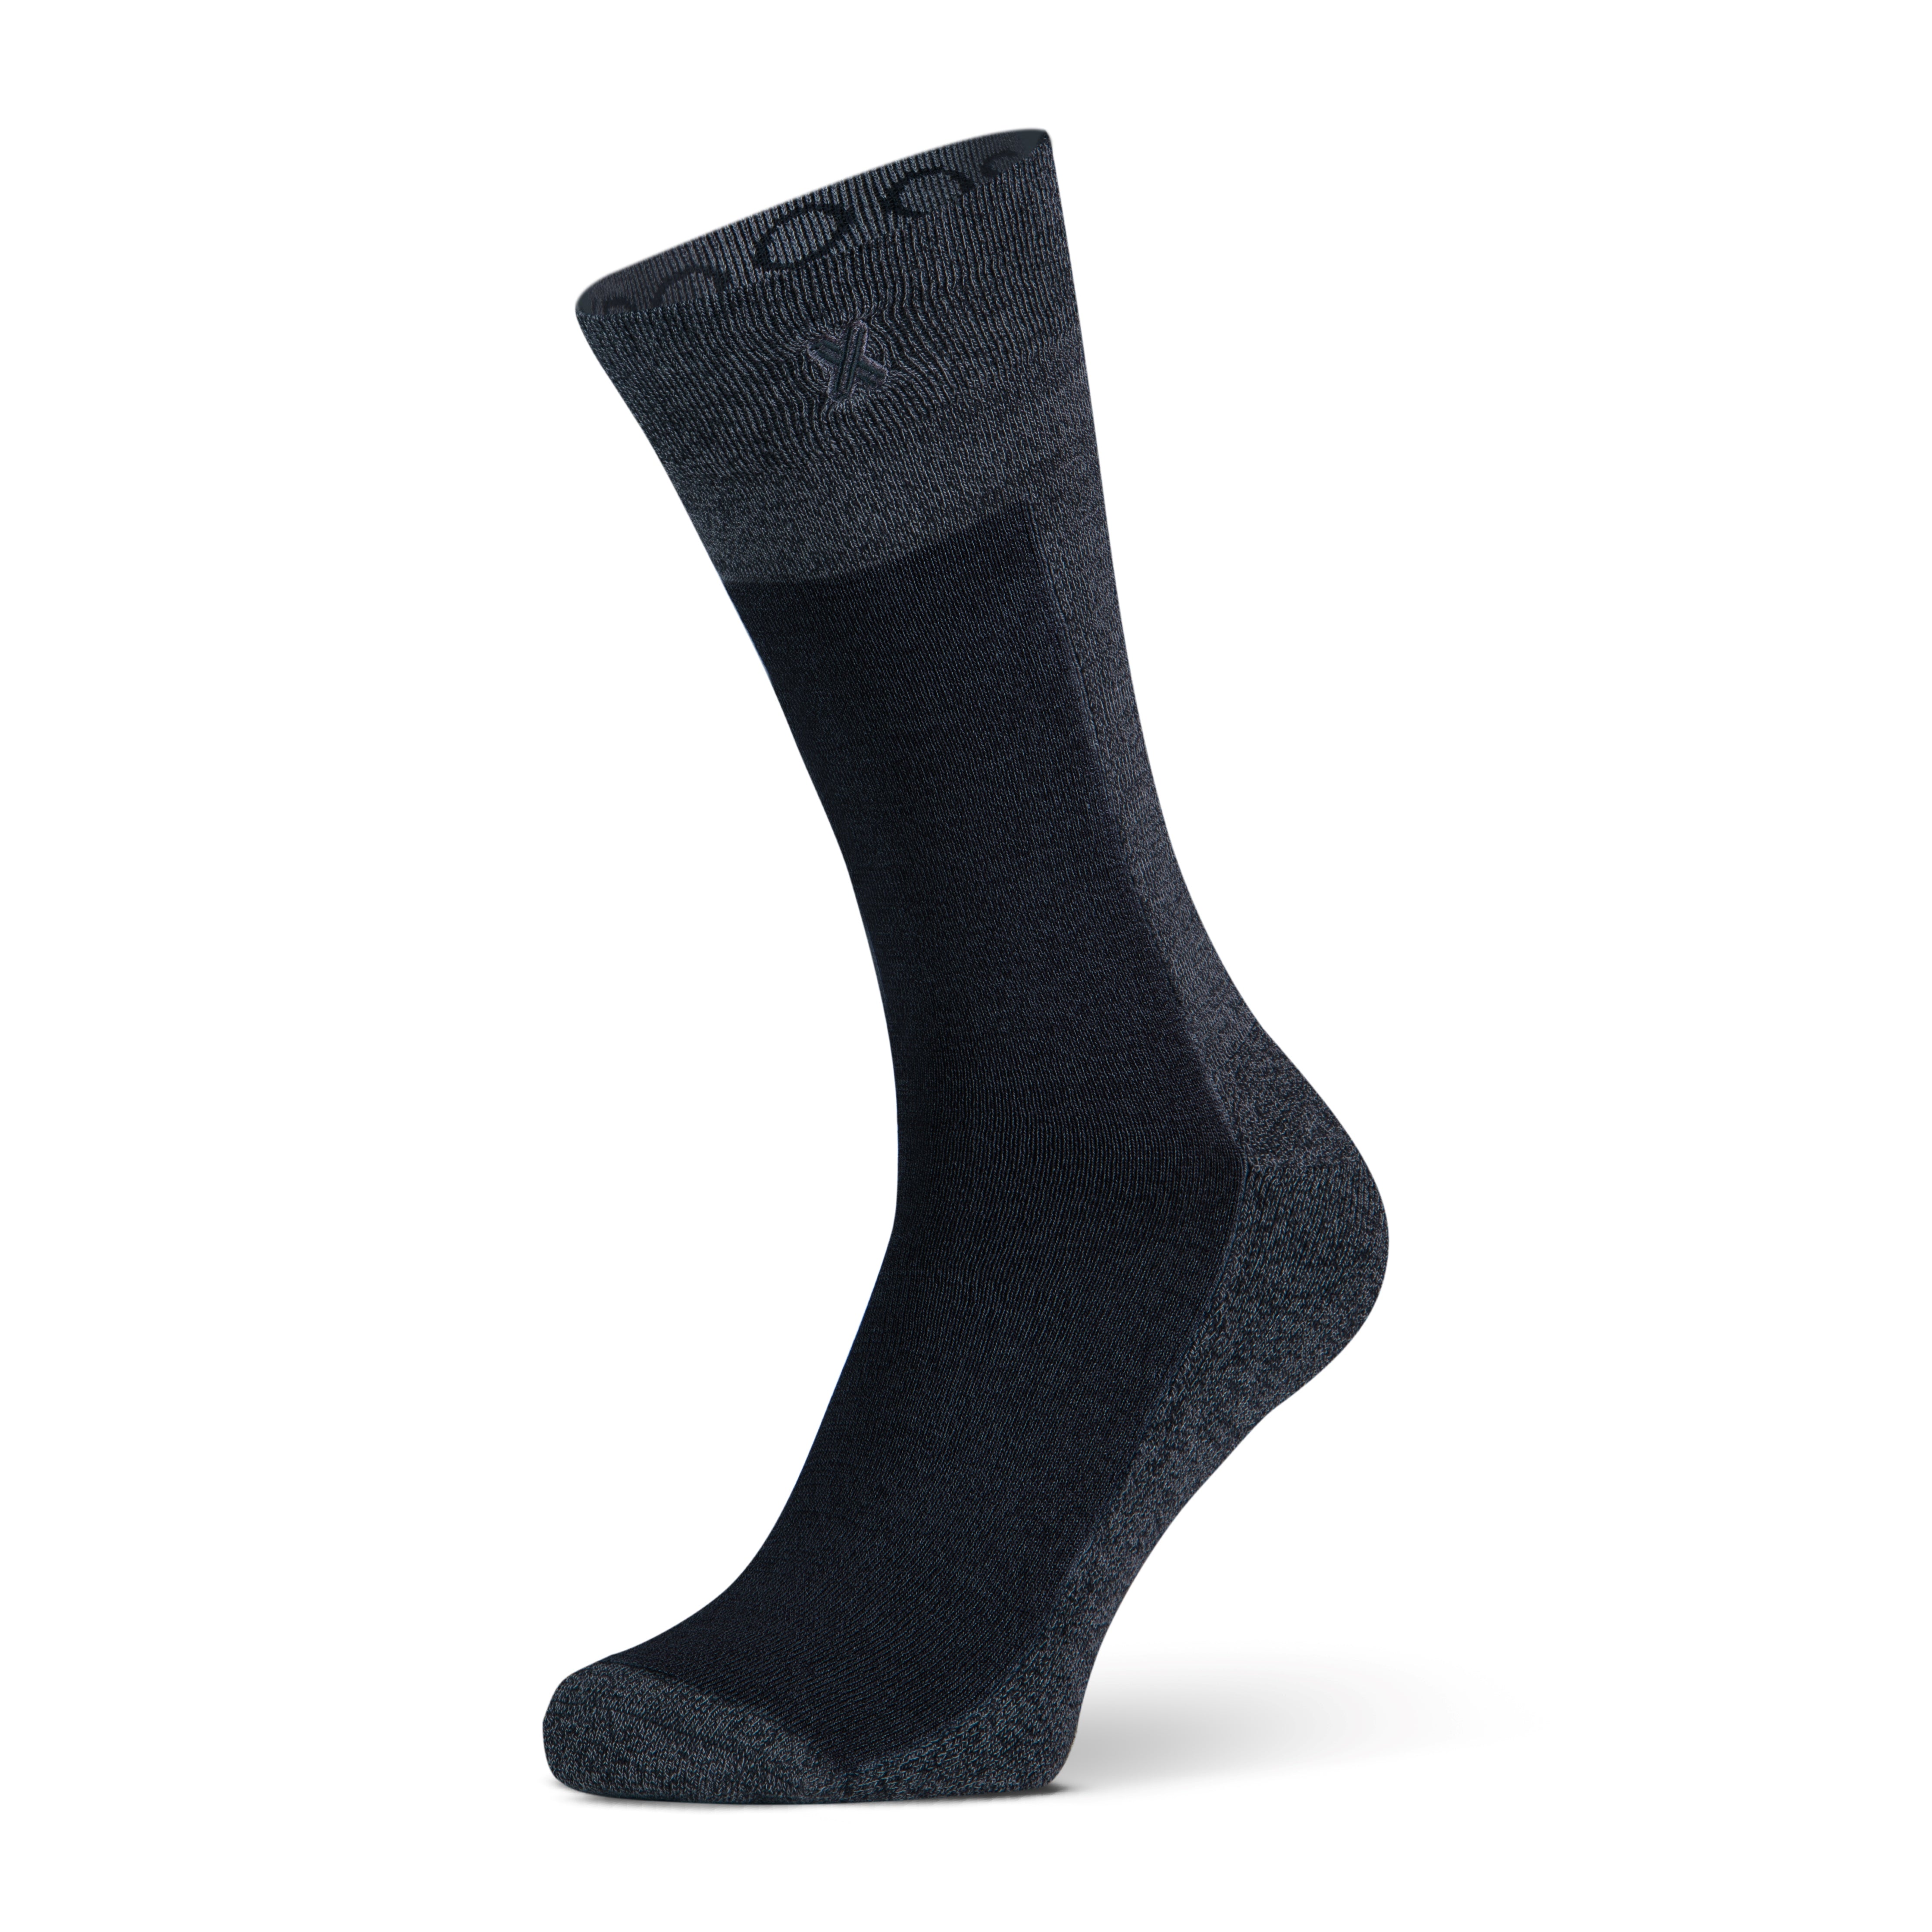 New York men's socks Black